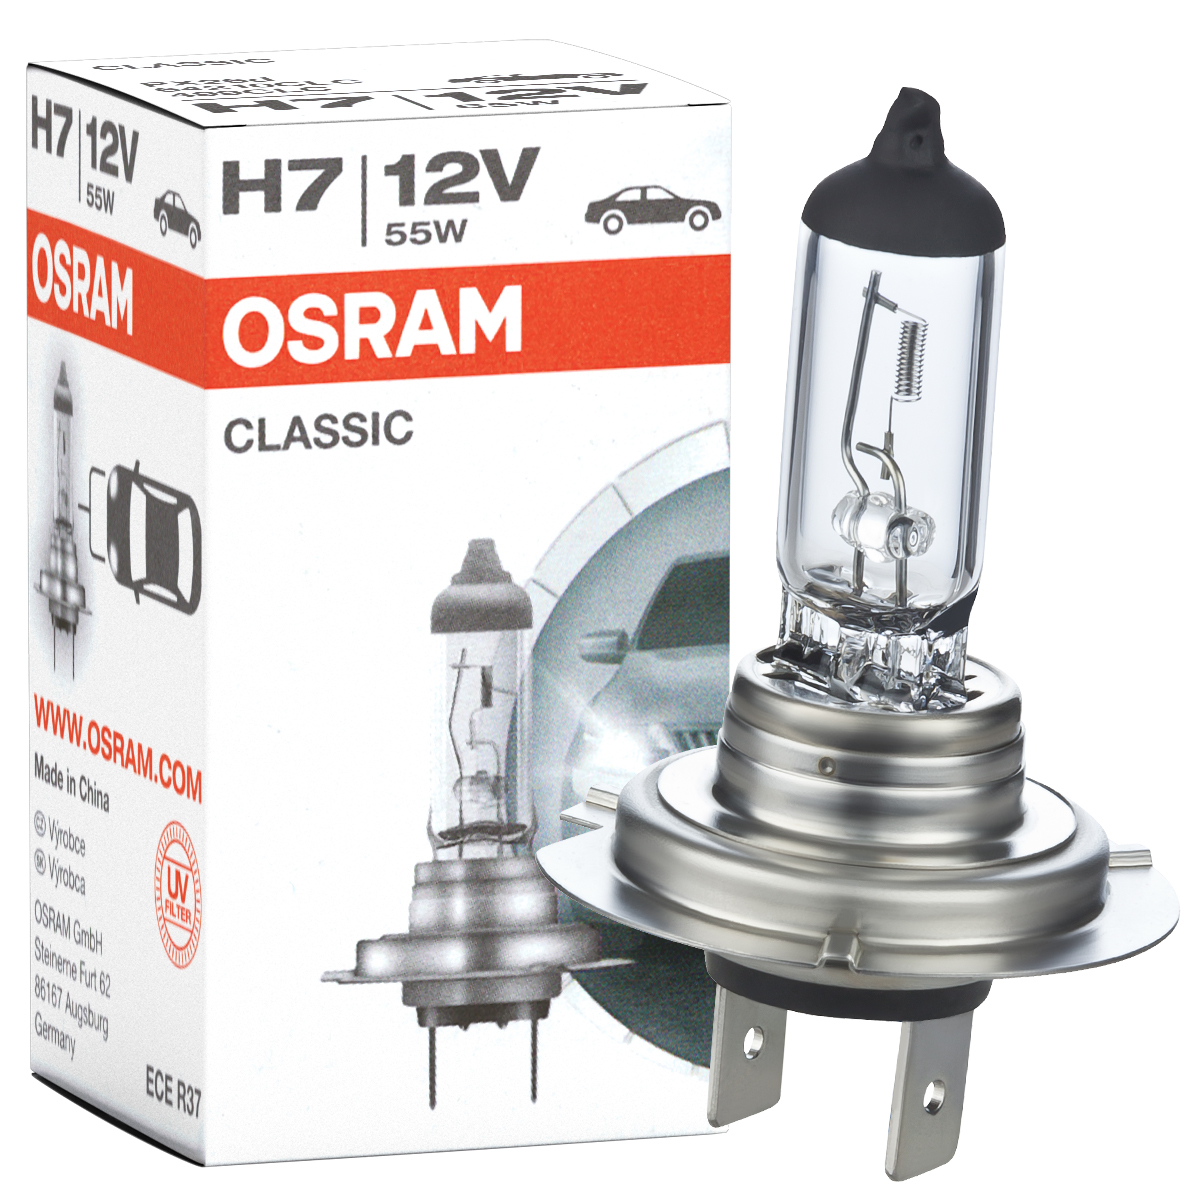 Auto-Lampen-Discount - H7 Lampen und mehr günstig kaufen - 100x Osram